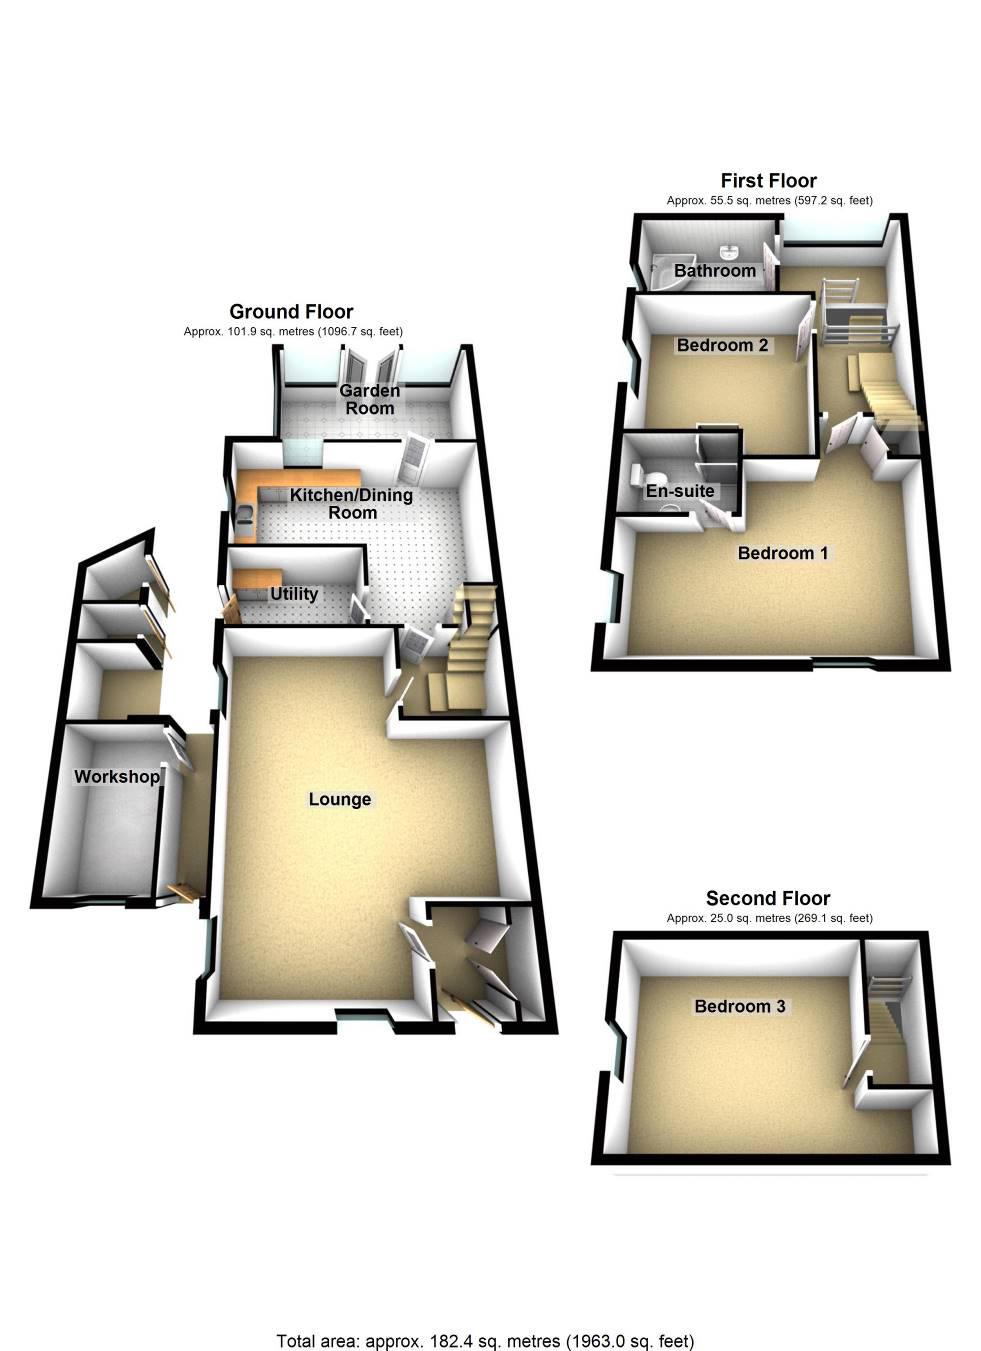 Property layout ROOM MEASUREMENTS Lounge 19'0 (5.79 m) X 24 4 (7.43 m) Kitchen diner 18'8 (5.69 m) X 15'8 (4.80 m) maximum measurements Garden room 15'9 (4.80 m) X 9 3 (2.84 m) Utility room 9'11 (3.